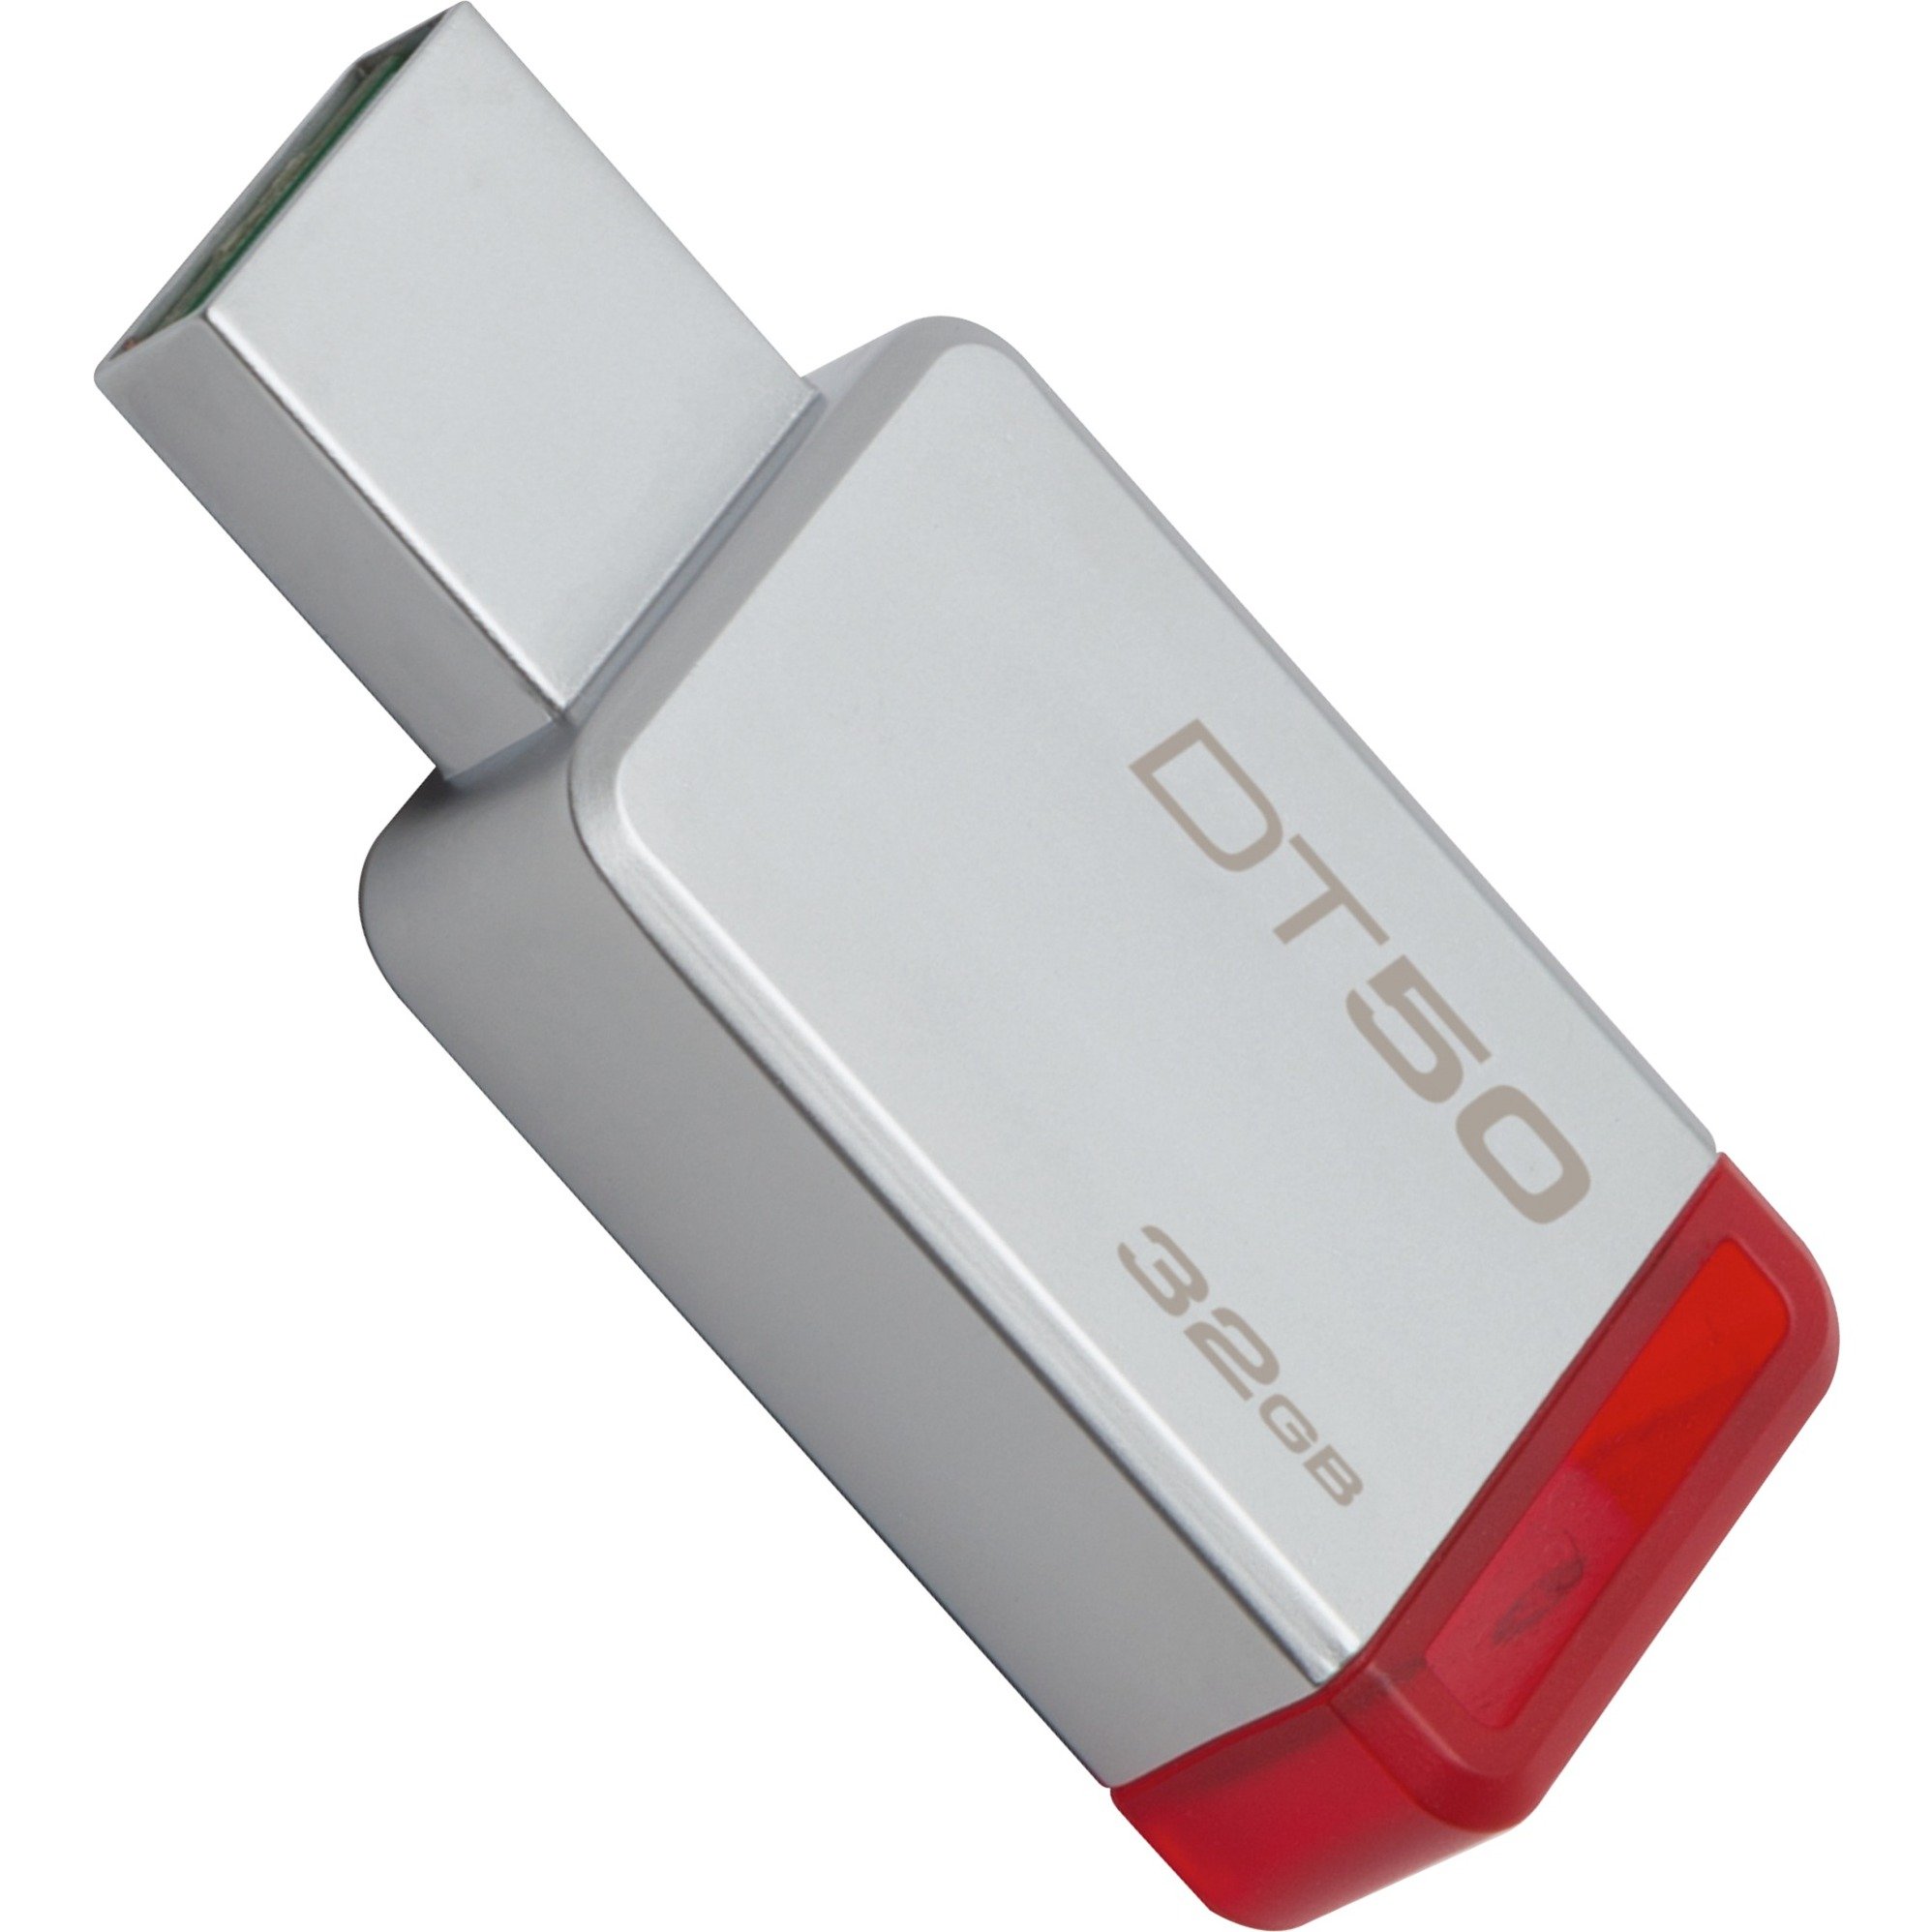 DataTraveler 50 32GB pami?? USB 3.0 (3.1 Gen 1) Z??cze USB typu A Czerwony, Srebrny, No?nik Pendrive USB